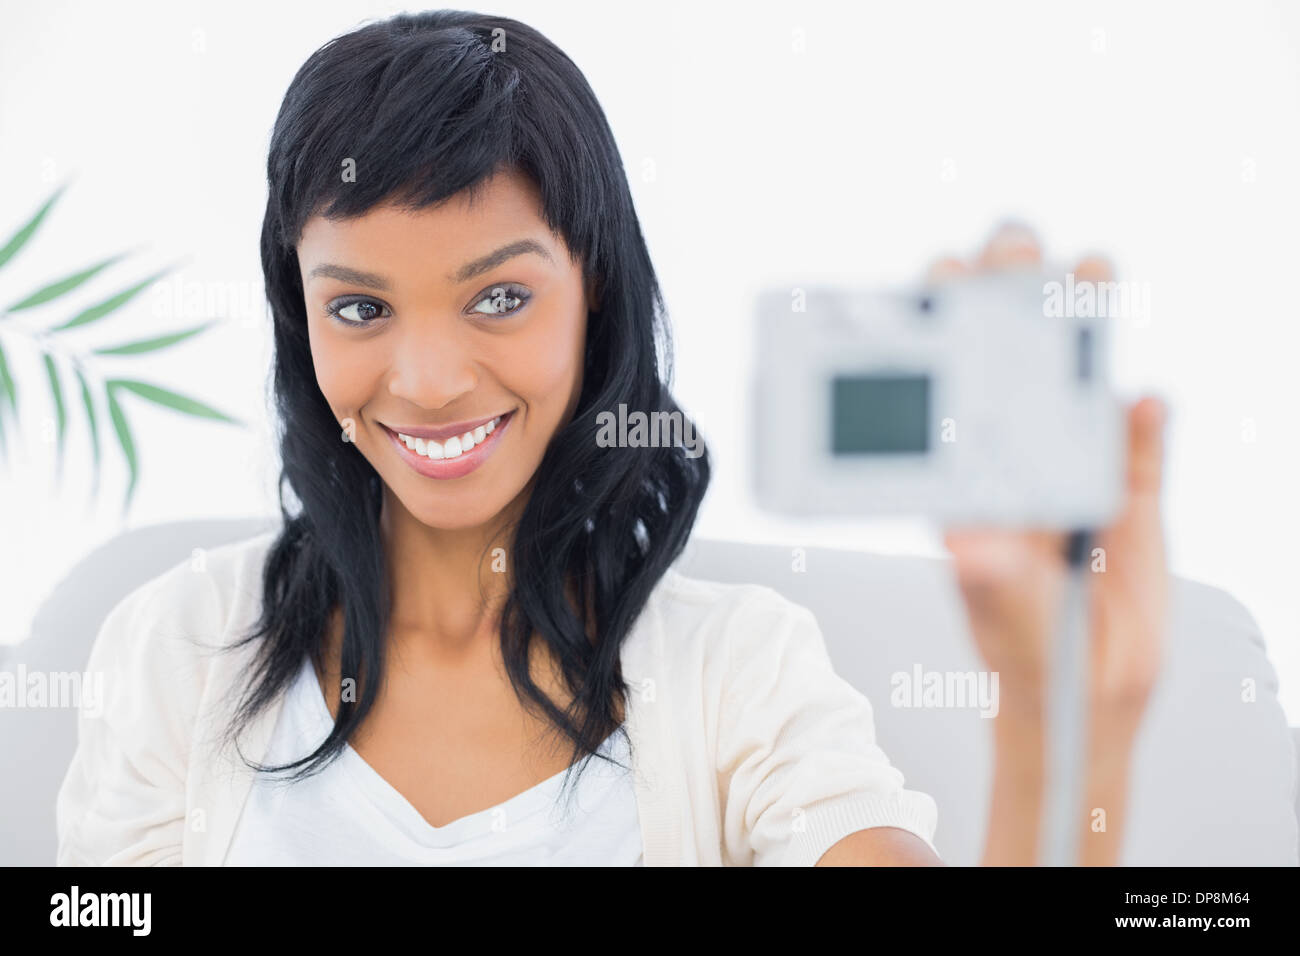 Natural black haired woman en blanc de prendre une photo d'elle-même Banque D'Images